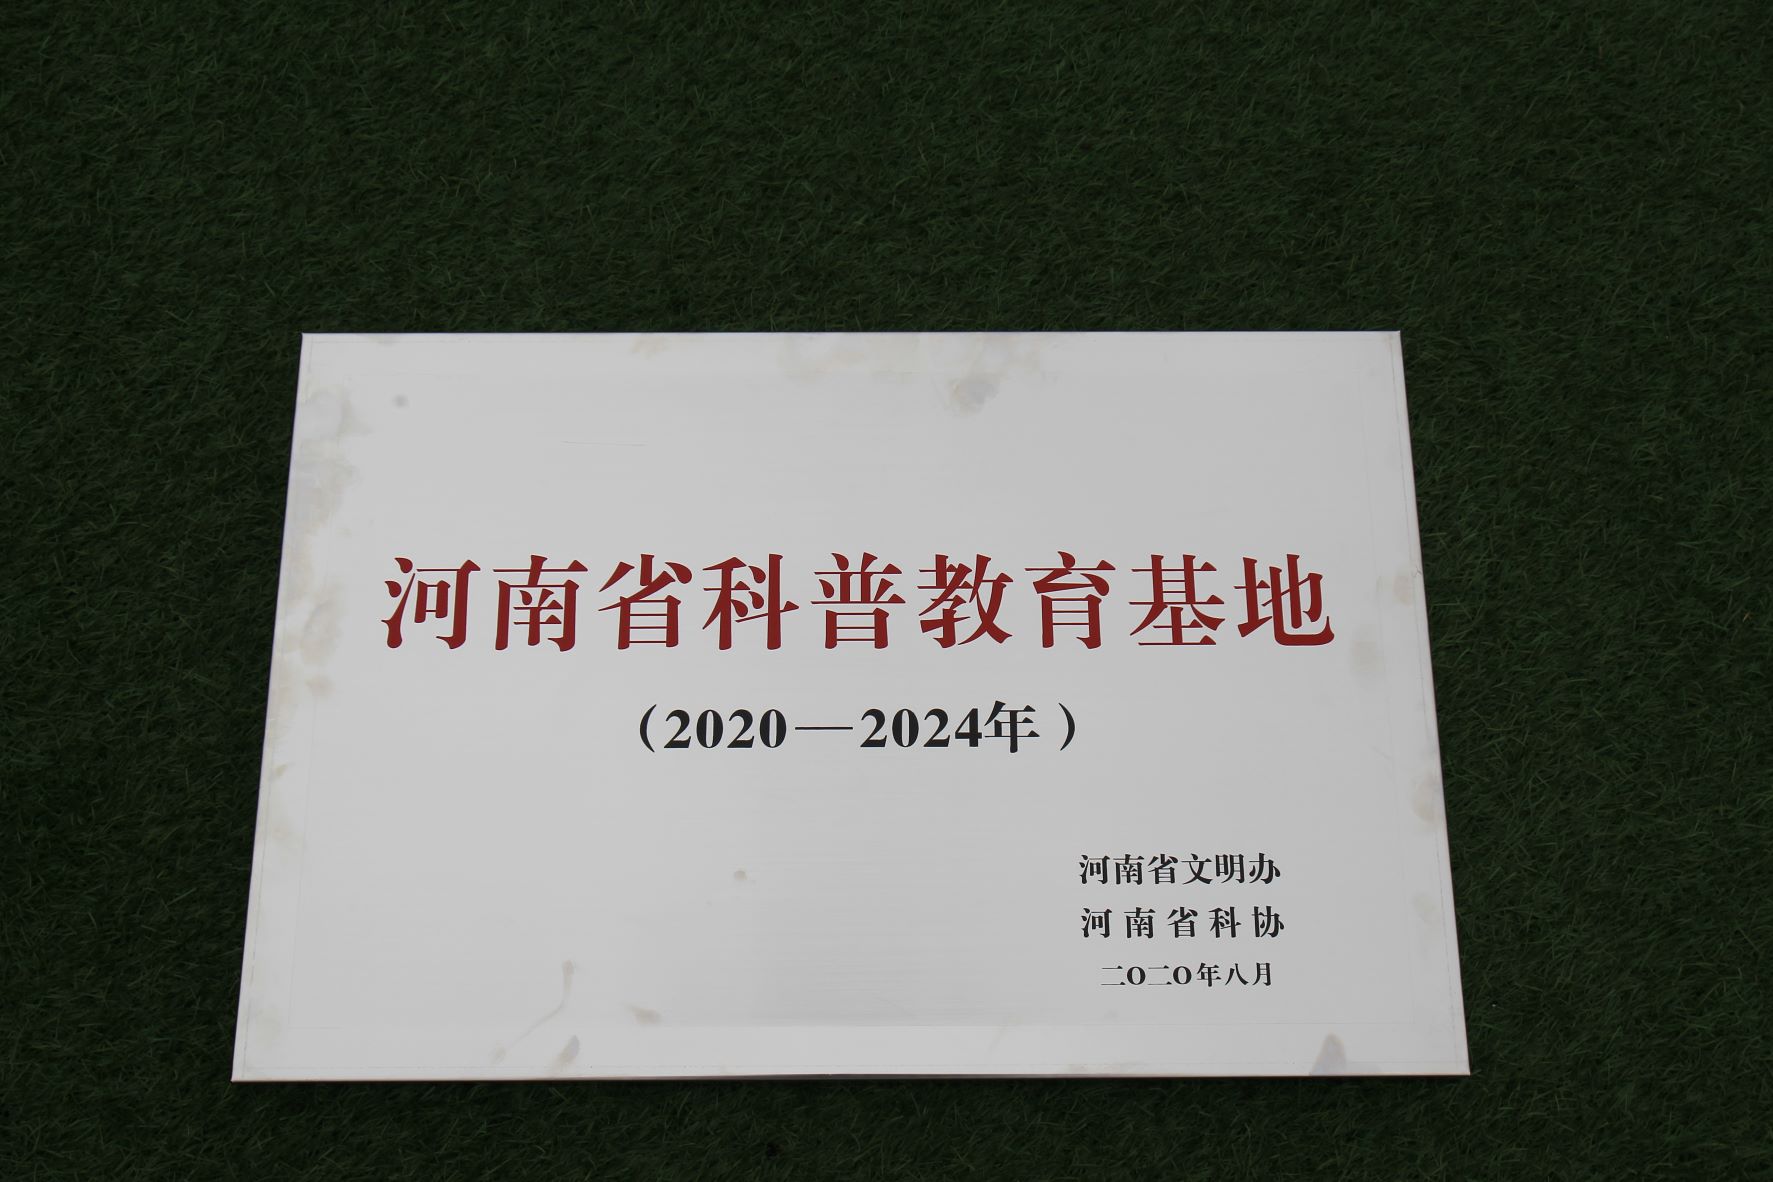 河南省文明办、河南省科协授予云台山风景名胜区“河南省科普教育基地”称号。